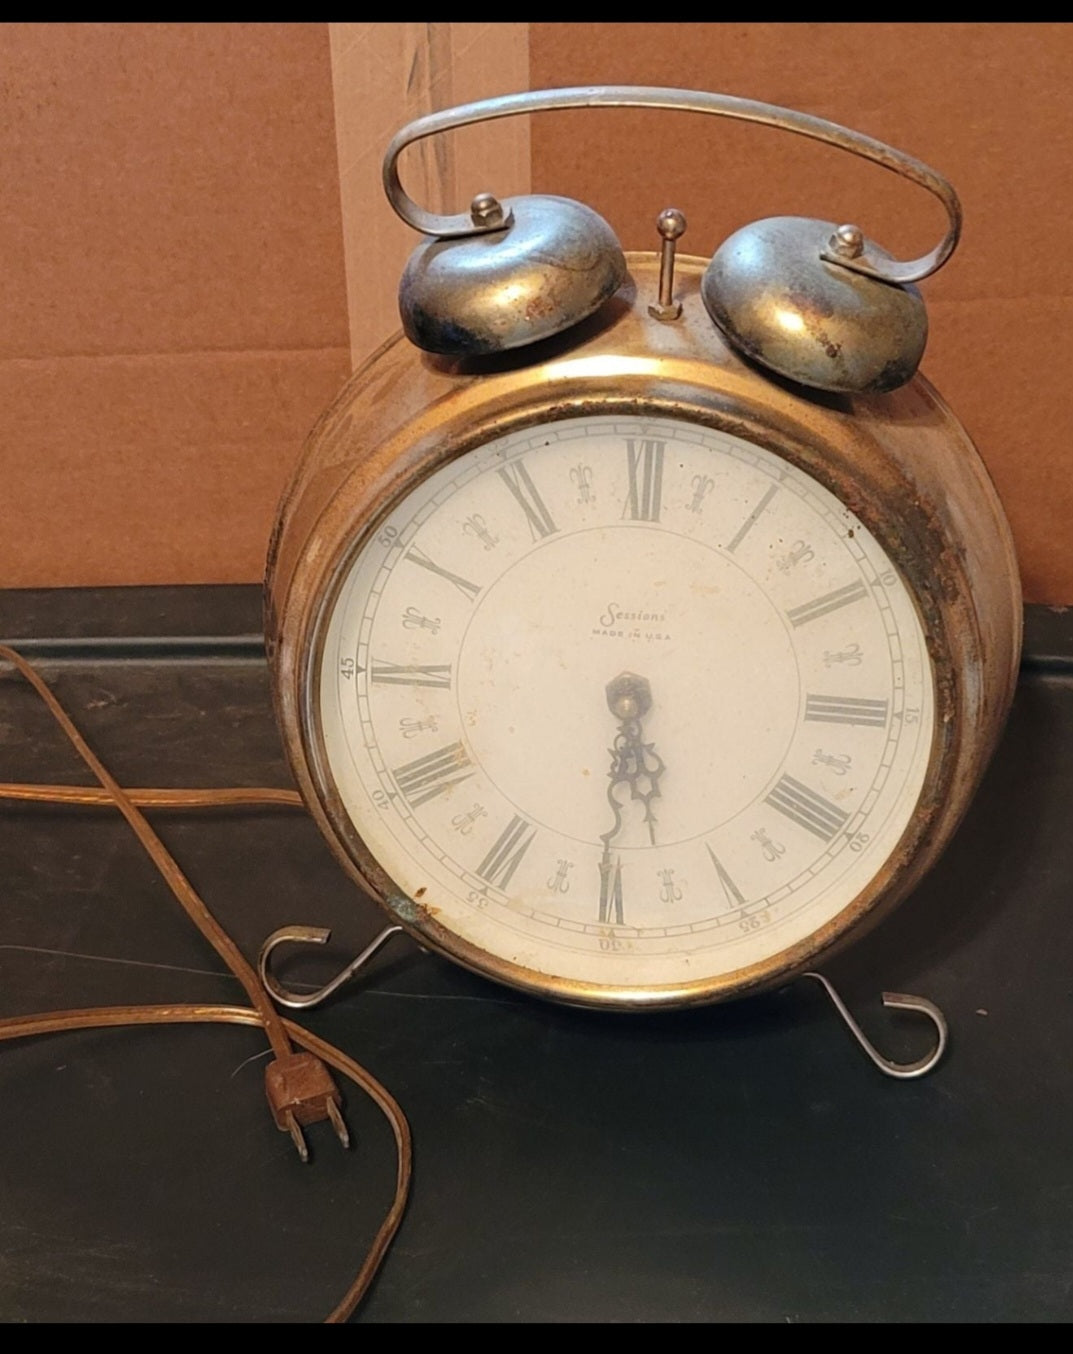 Antique Sessions alarm clock